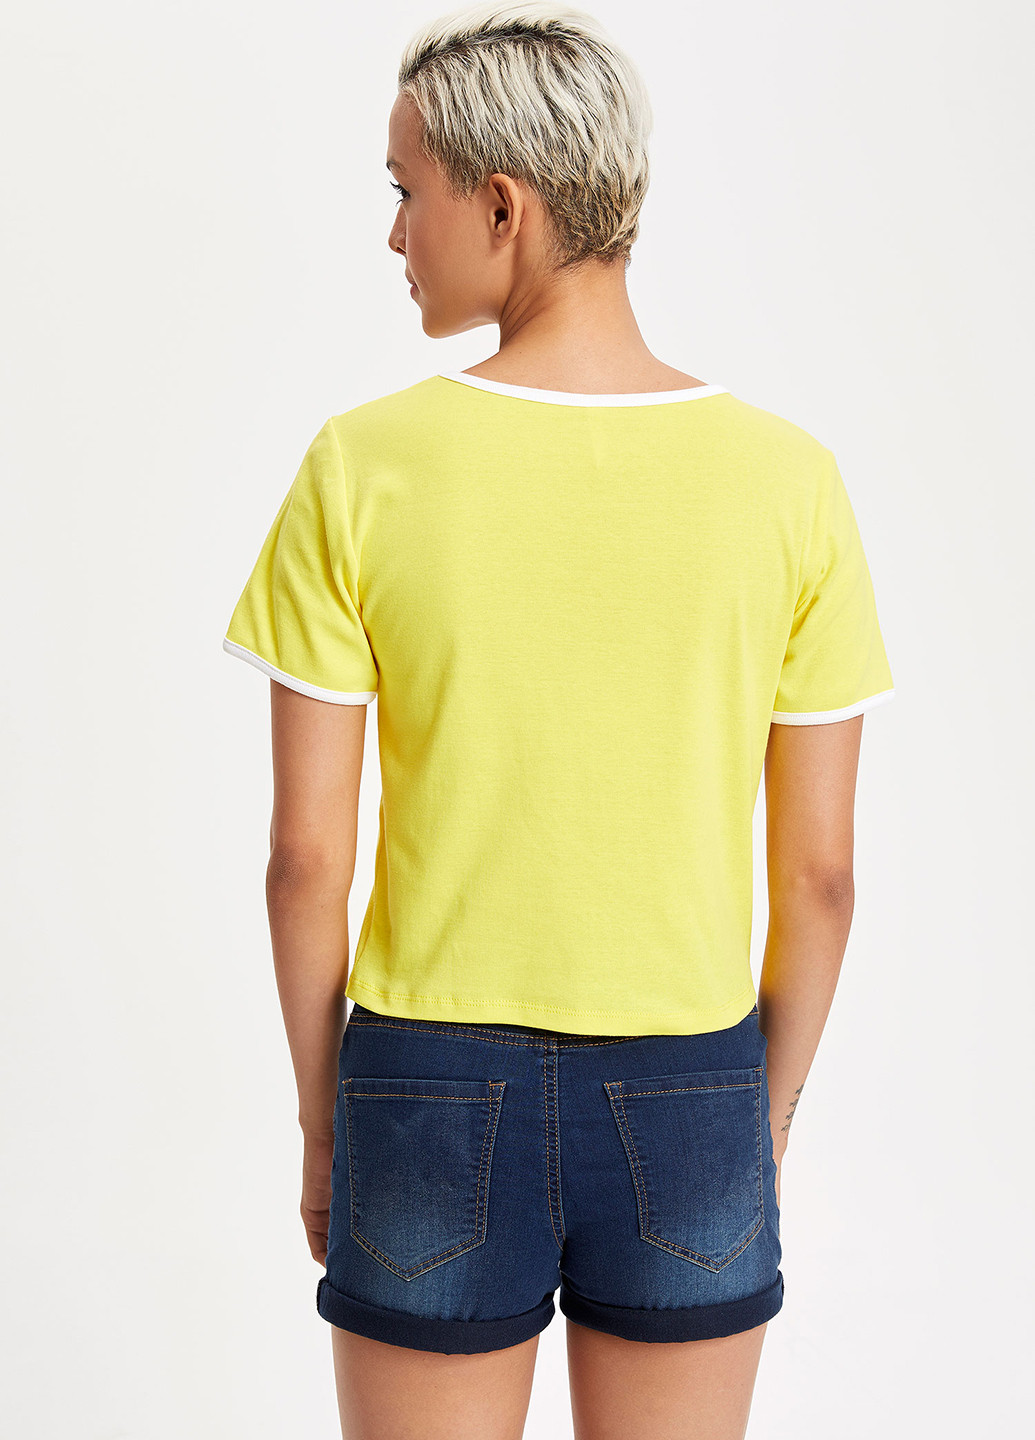 Желтая летняя футболка DeFacto